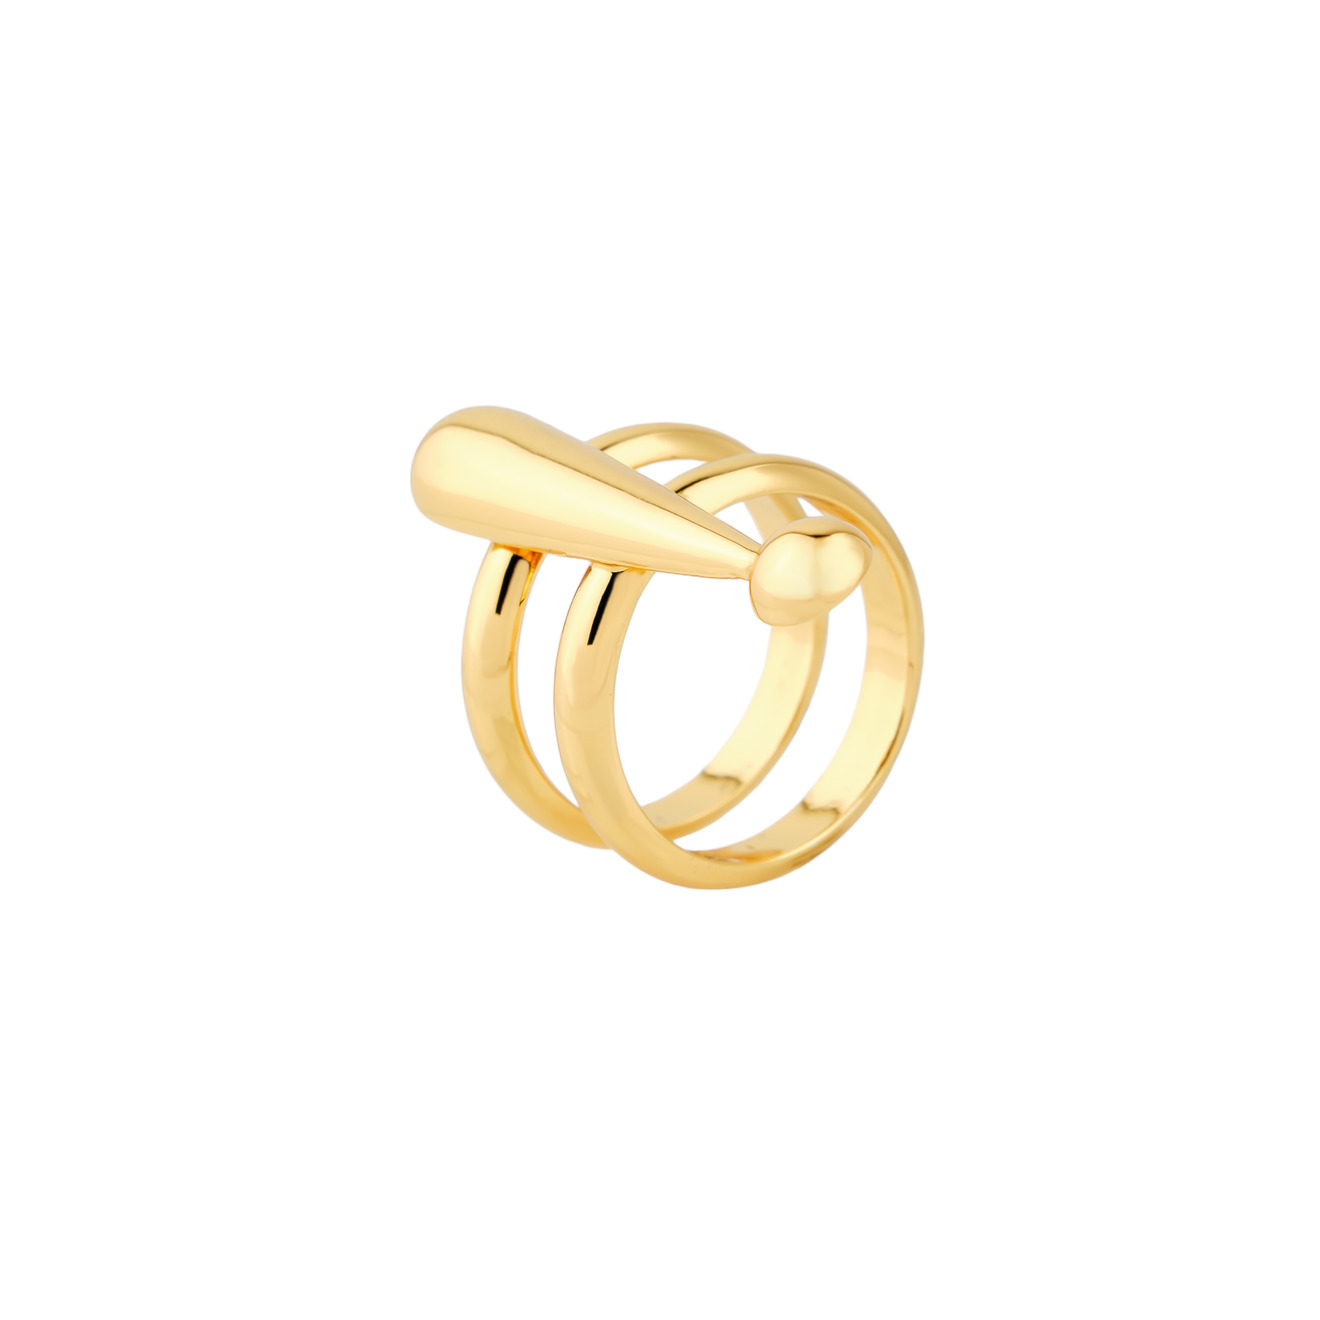 Moschino Двойное позолоченное кольцо с восклицательным знаком